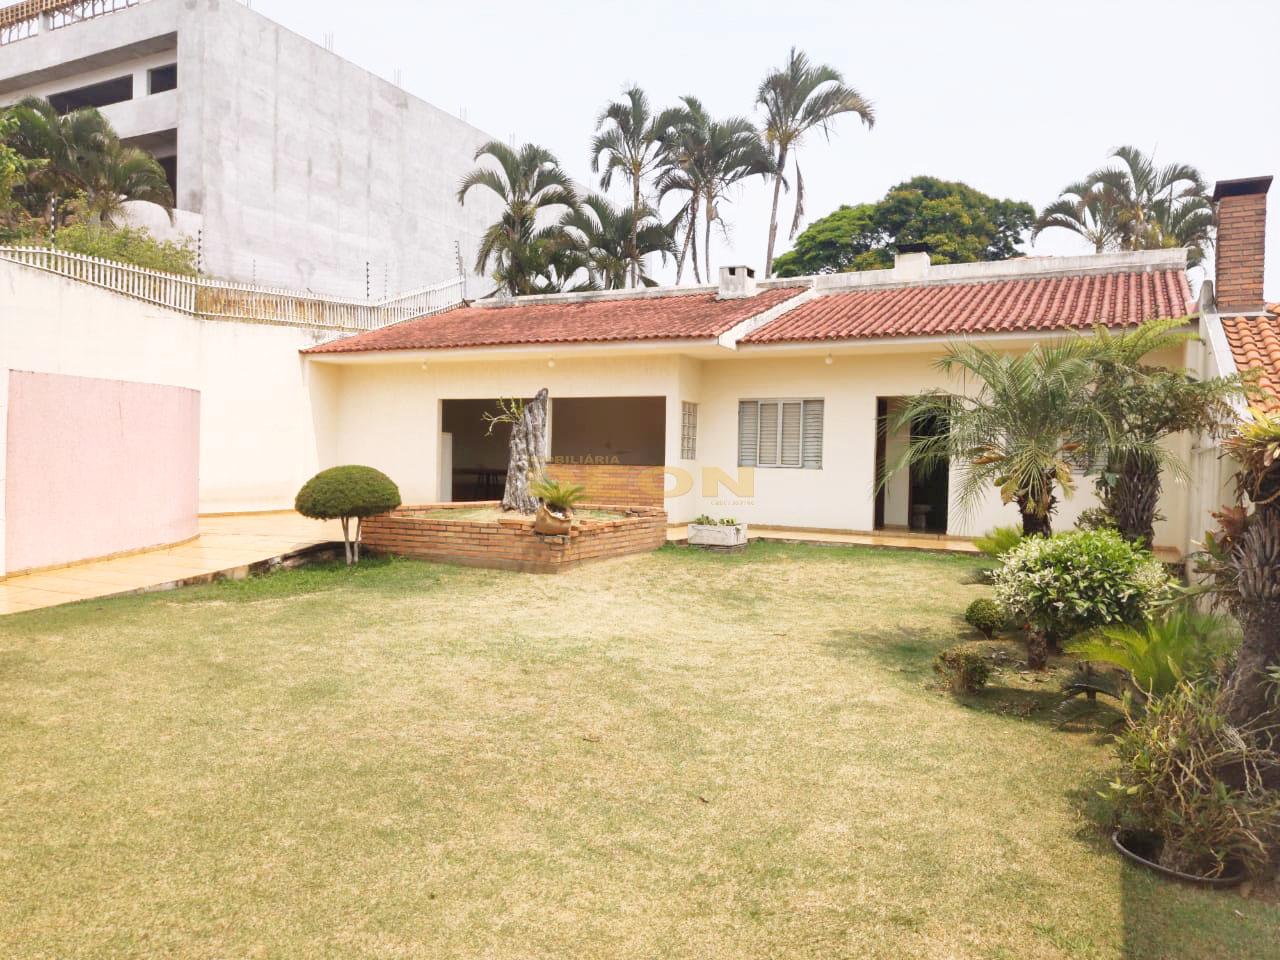 Casa com 3 dormitórios à venda, Vila Tolentino, CASCAVEL - PR